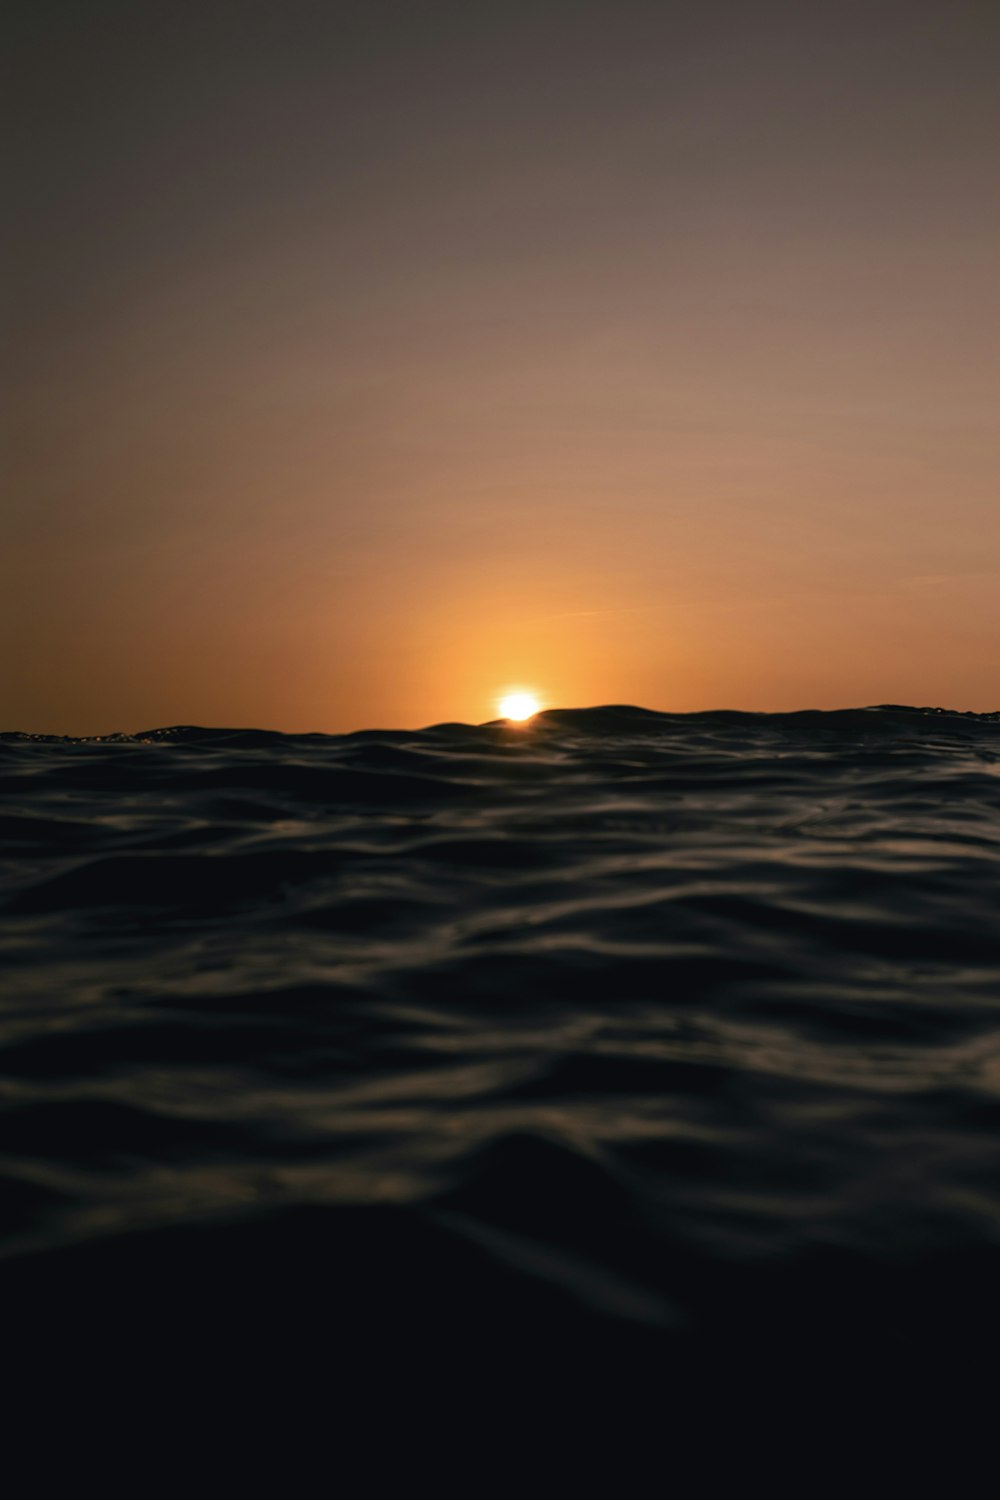 Le soleil se couche sur l’horizon de l’océan